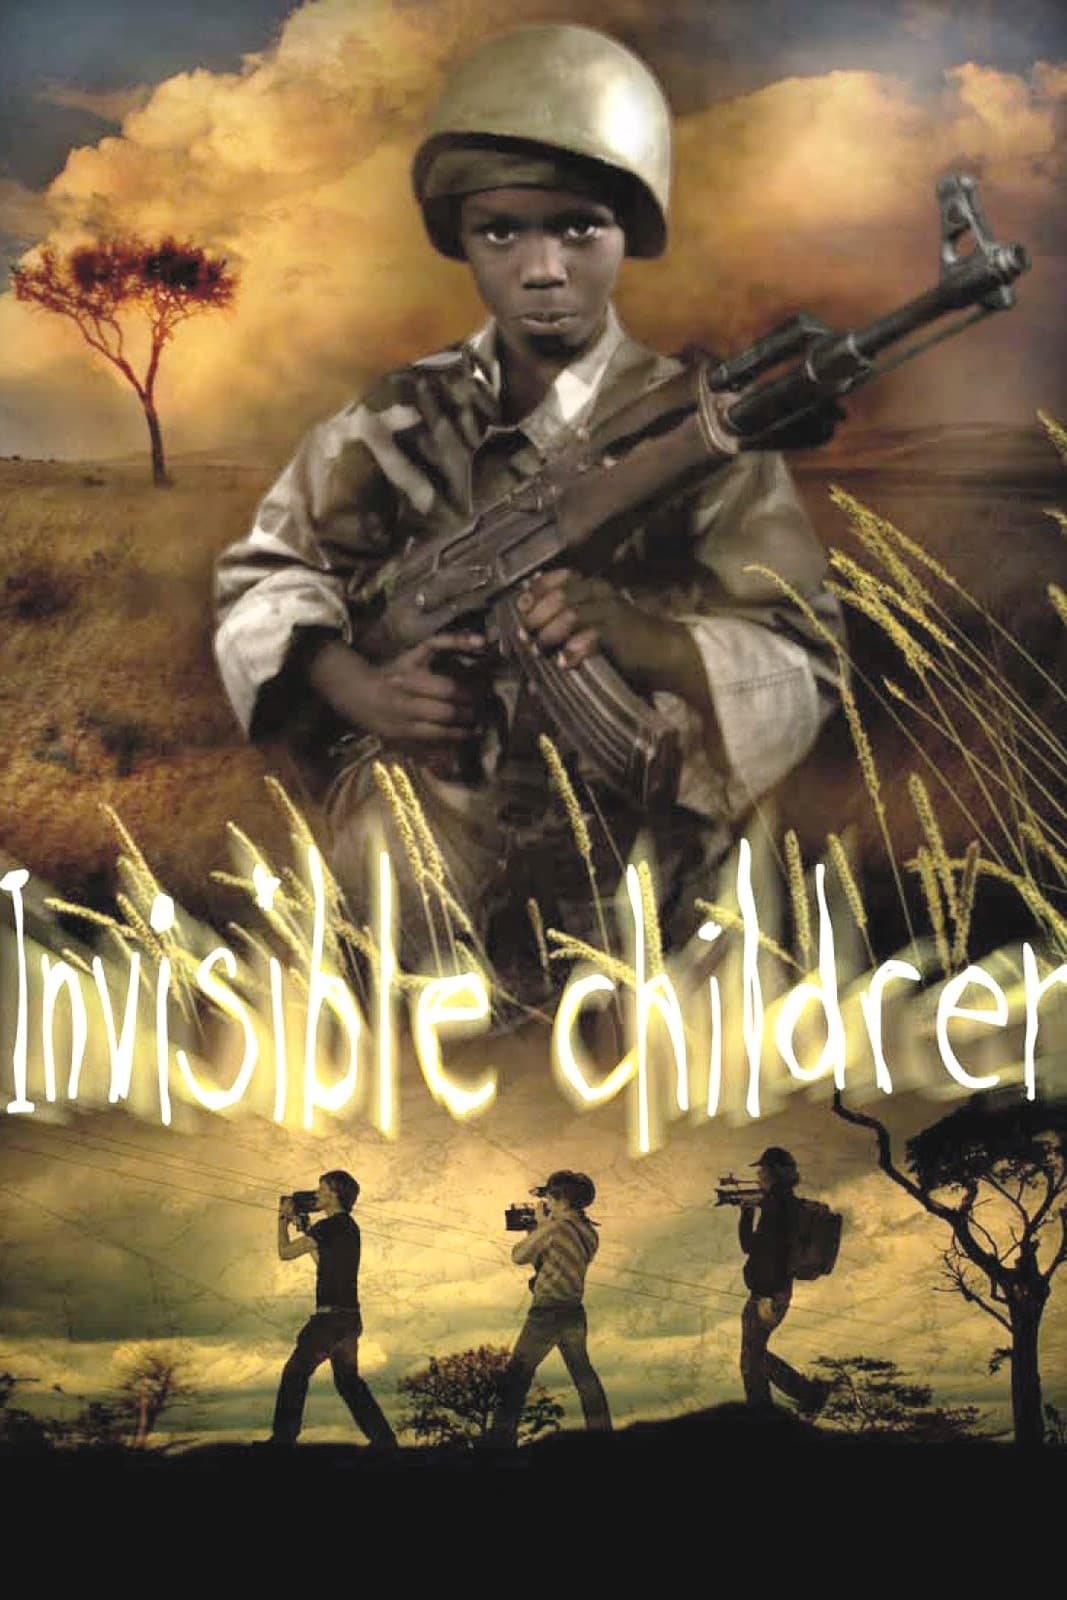 Invisible Children (2006)